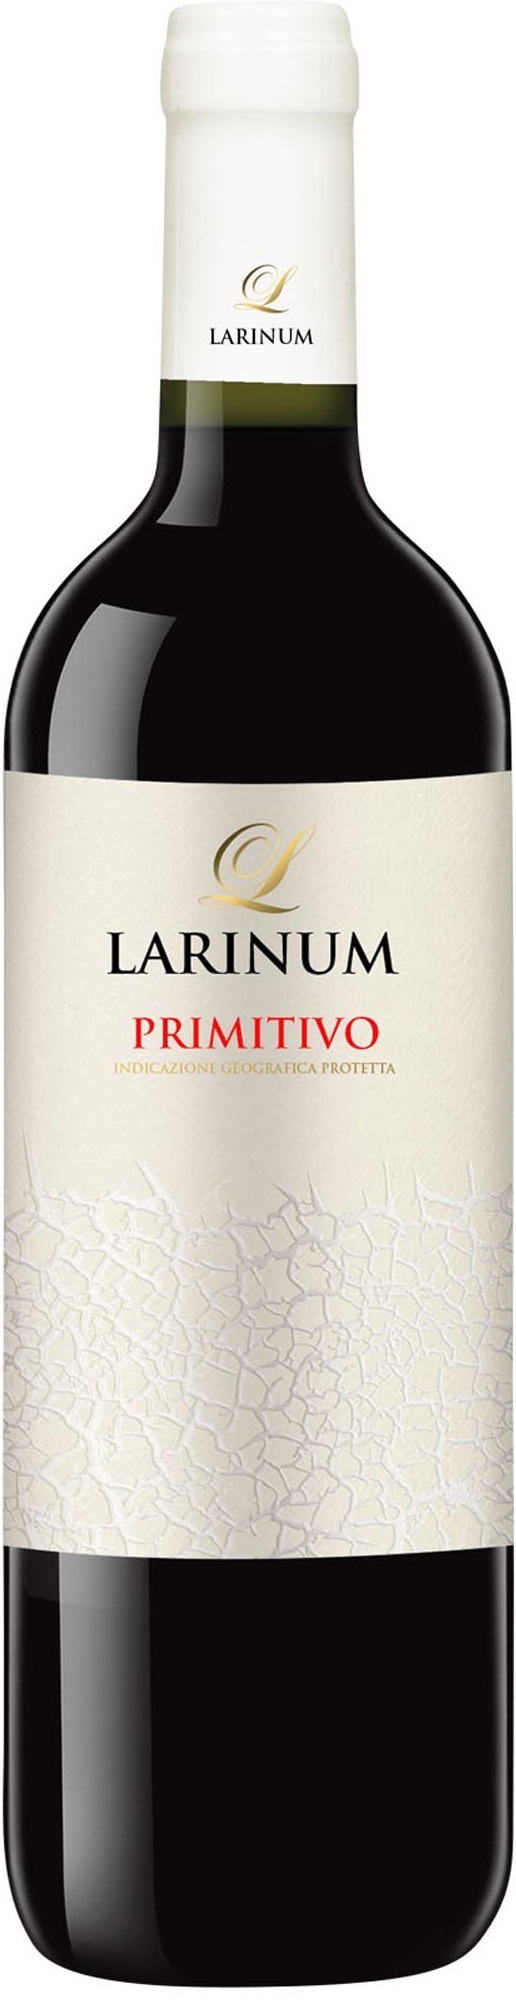 Primitivo Larinum